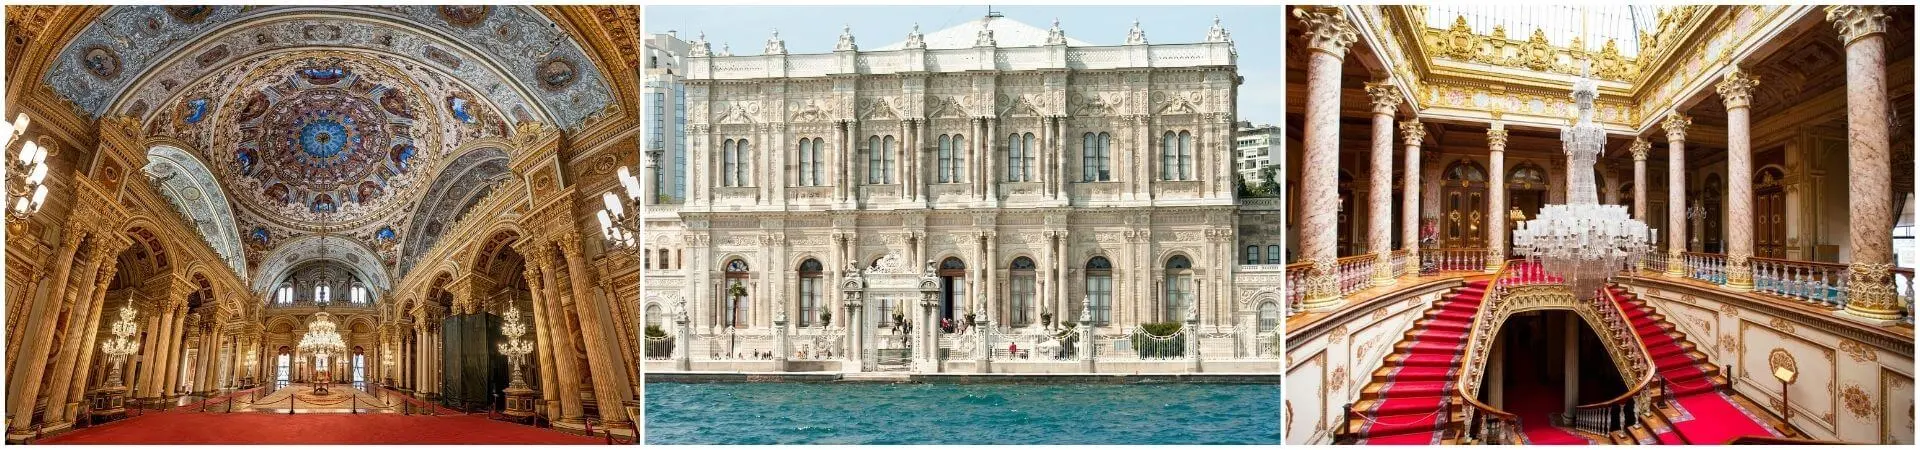 Obilazak palače Dolmabahče